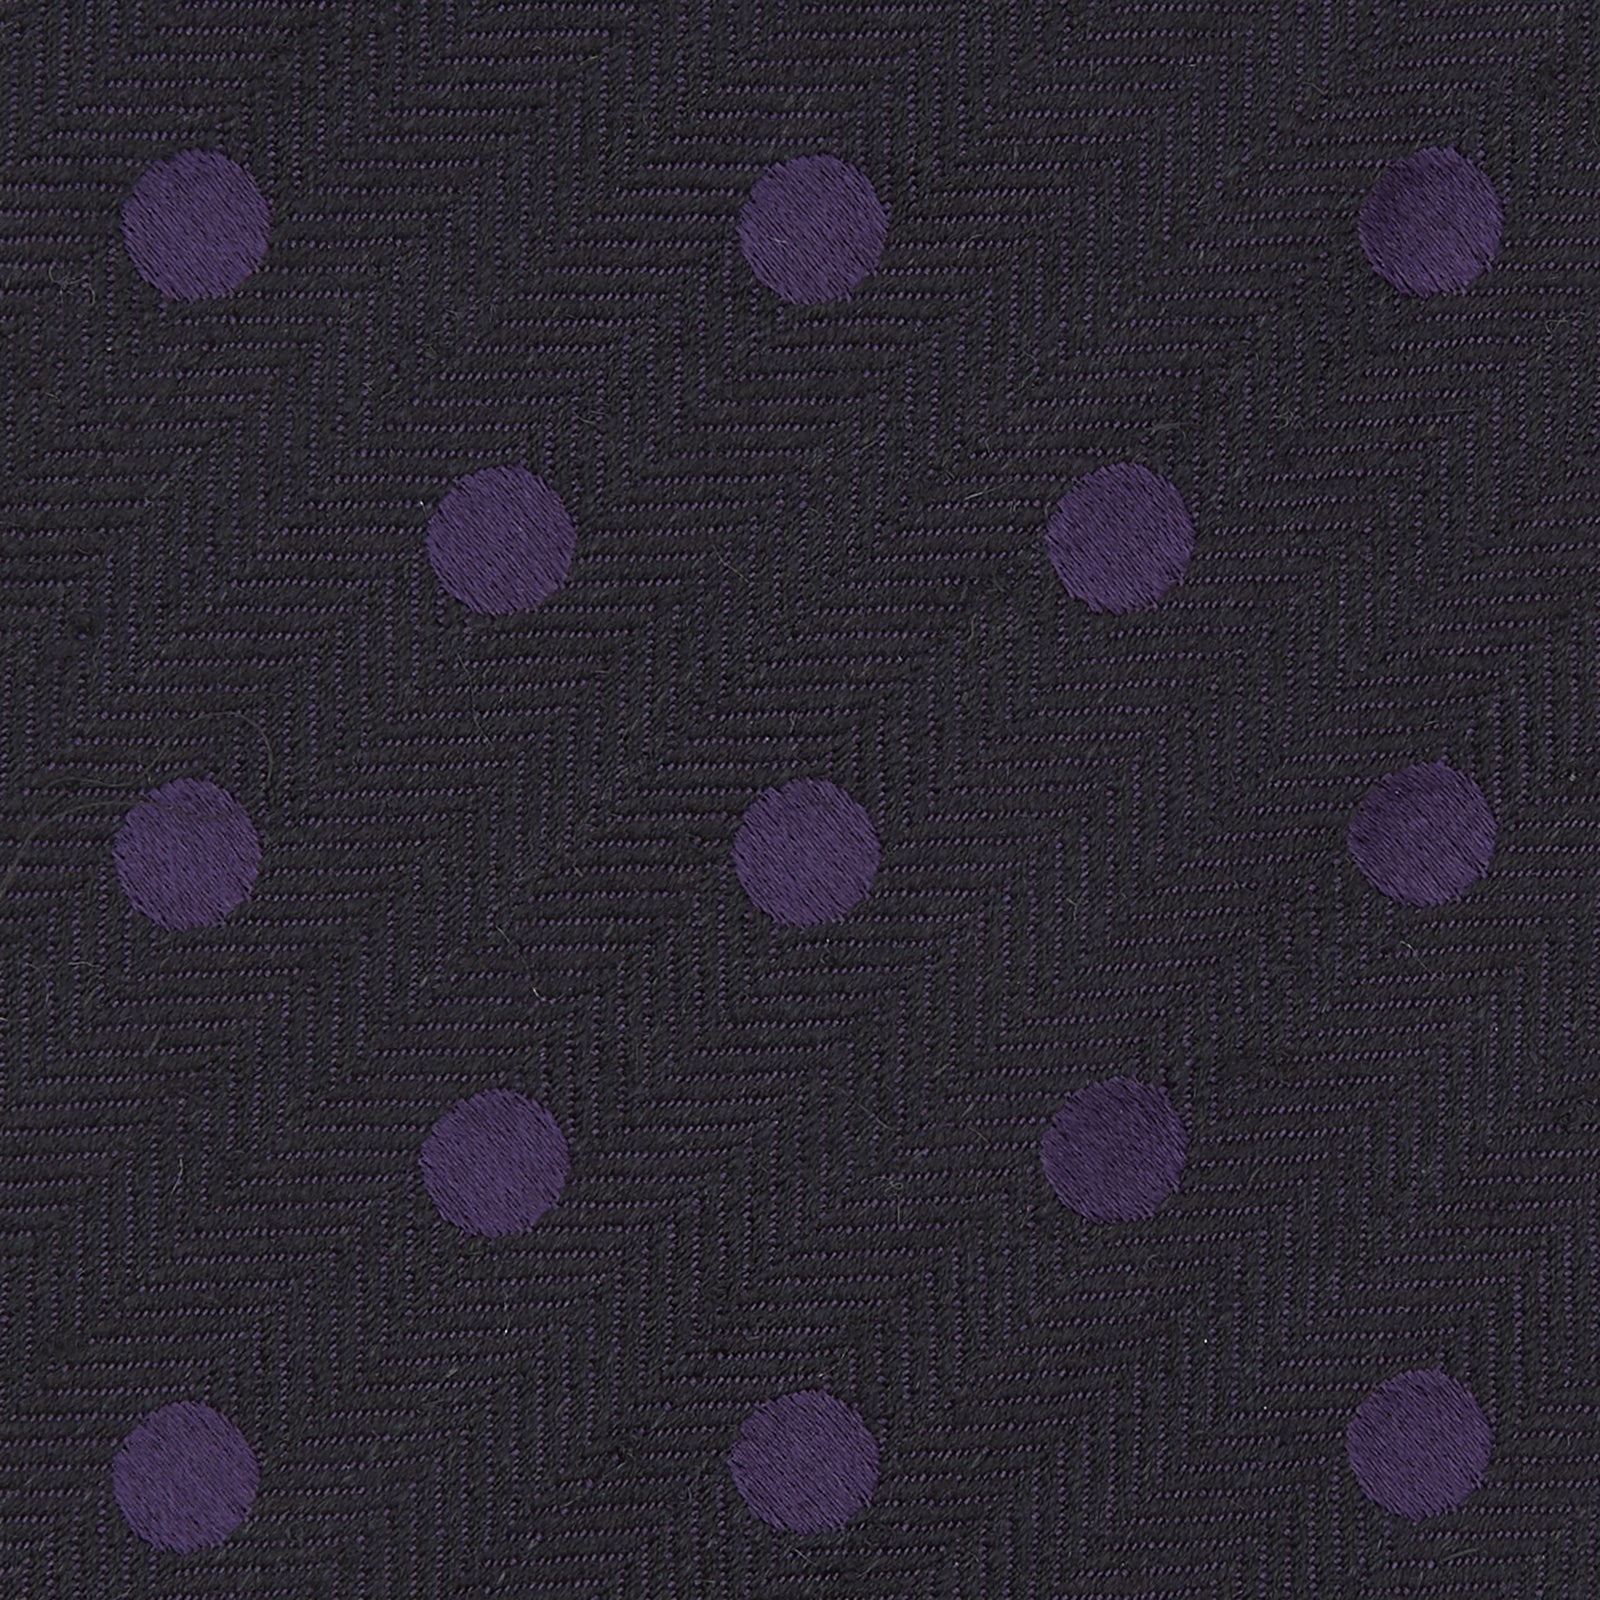 Purple Spot Silk Blend Noile Tie